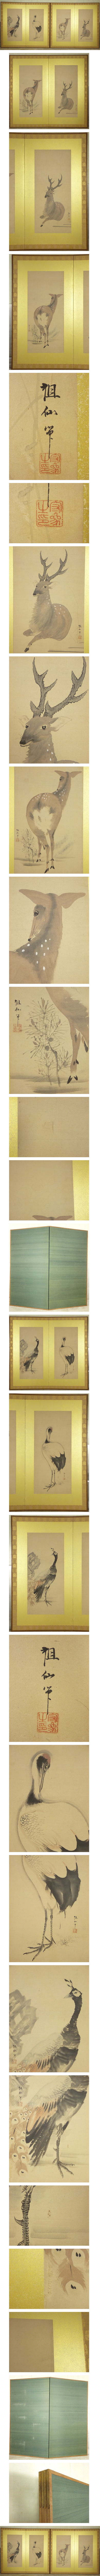 【直販特注】森祖仙 孔雀 鶴 鹿の図 二枚折 屏風 一双 高さ 約174.5cm 紙本 肉筆 動物画 日本画 花鳥、鳥獣